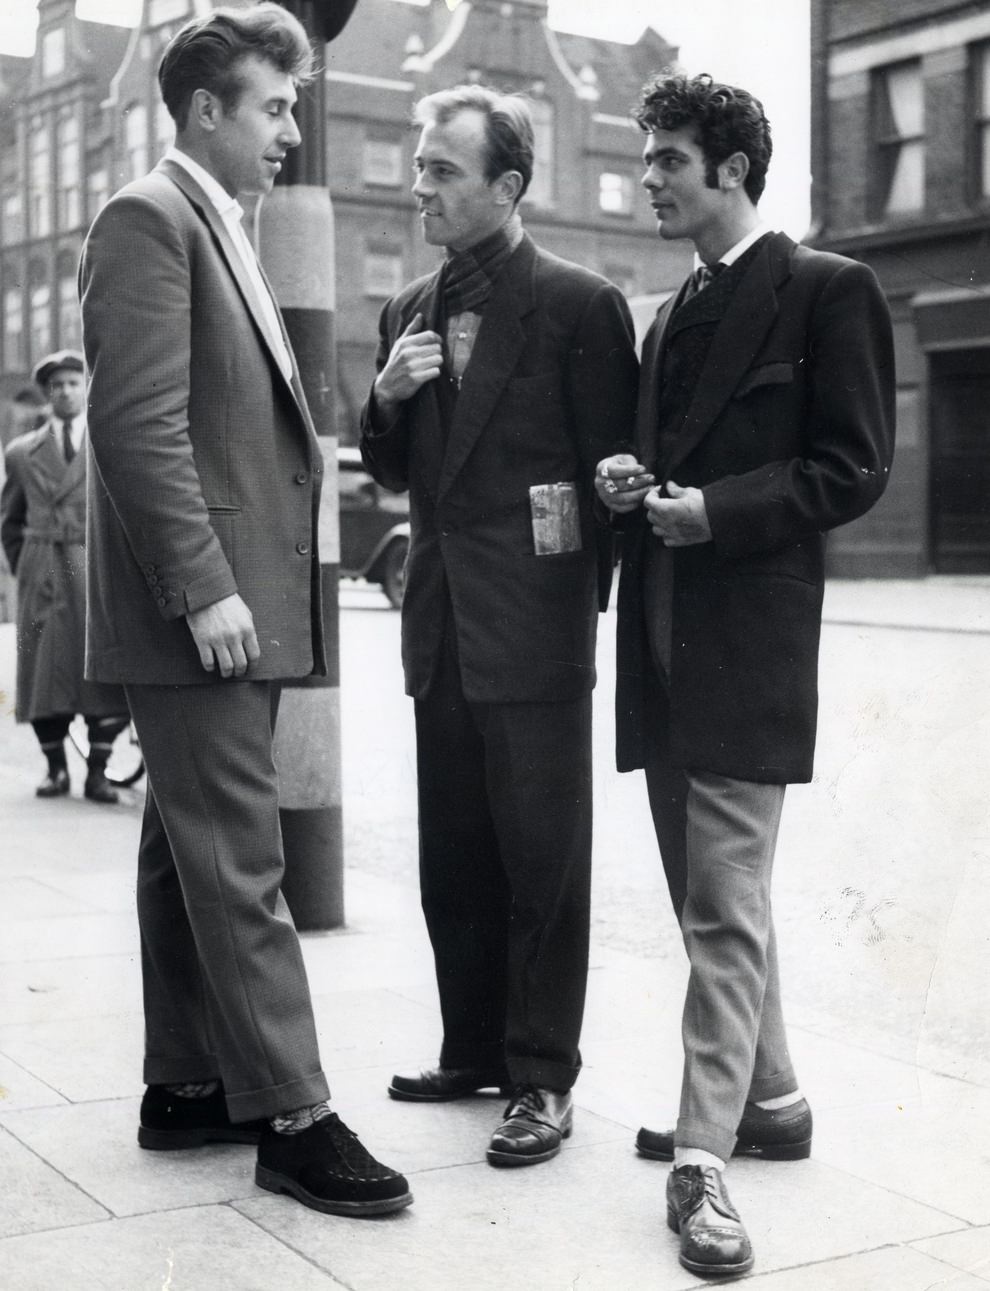 Teddy Boys at Greenwich, London in 1956.